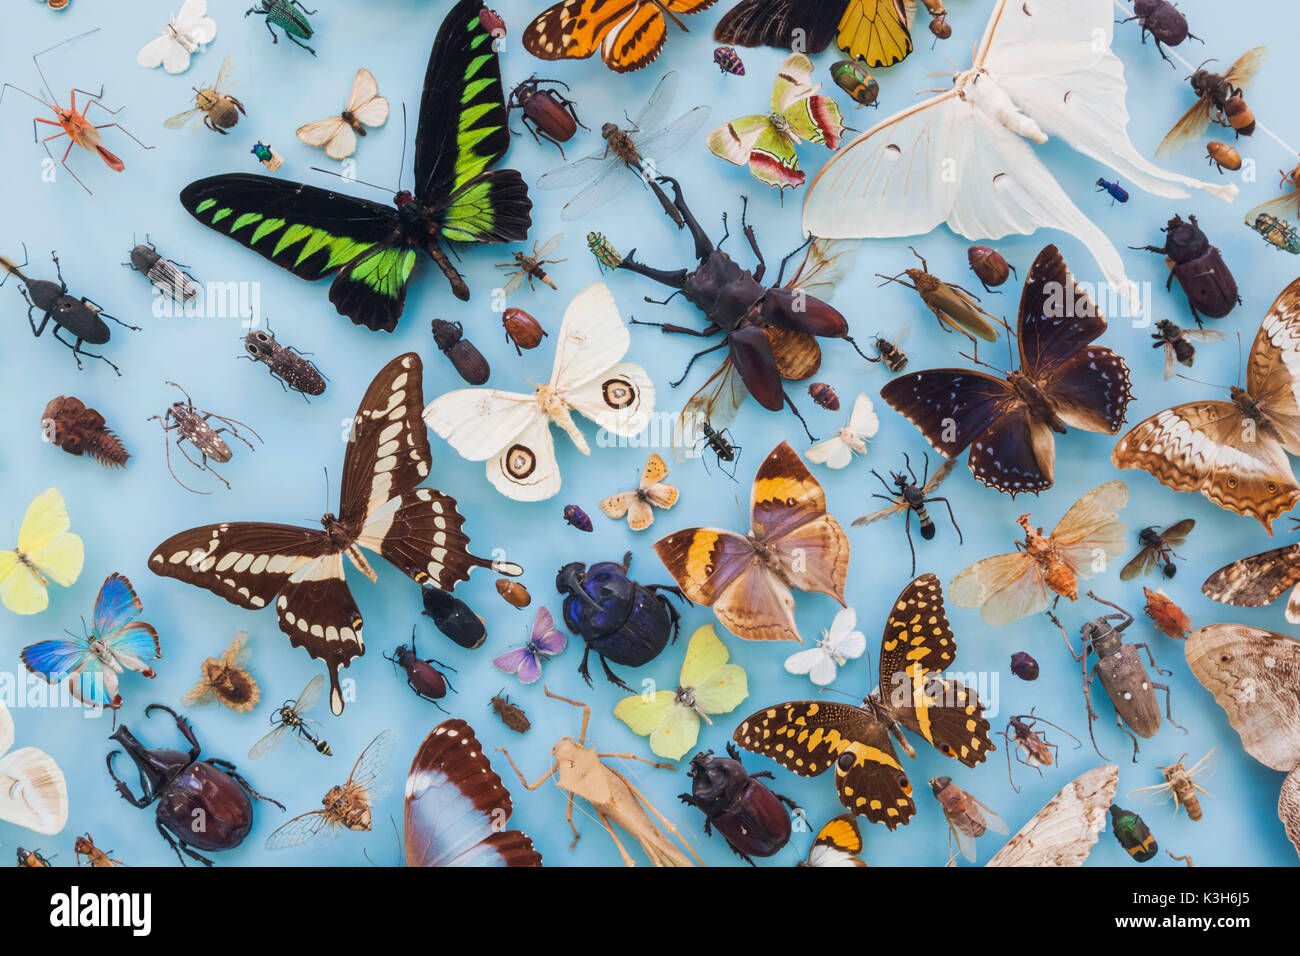 Inghilterra, Oxfordshire, Oxford, Museo di Storia Naturale, Display di insetti e farfalle Foto Stock